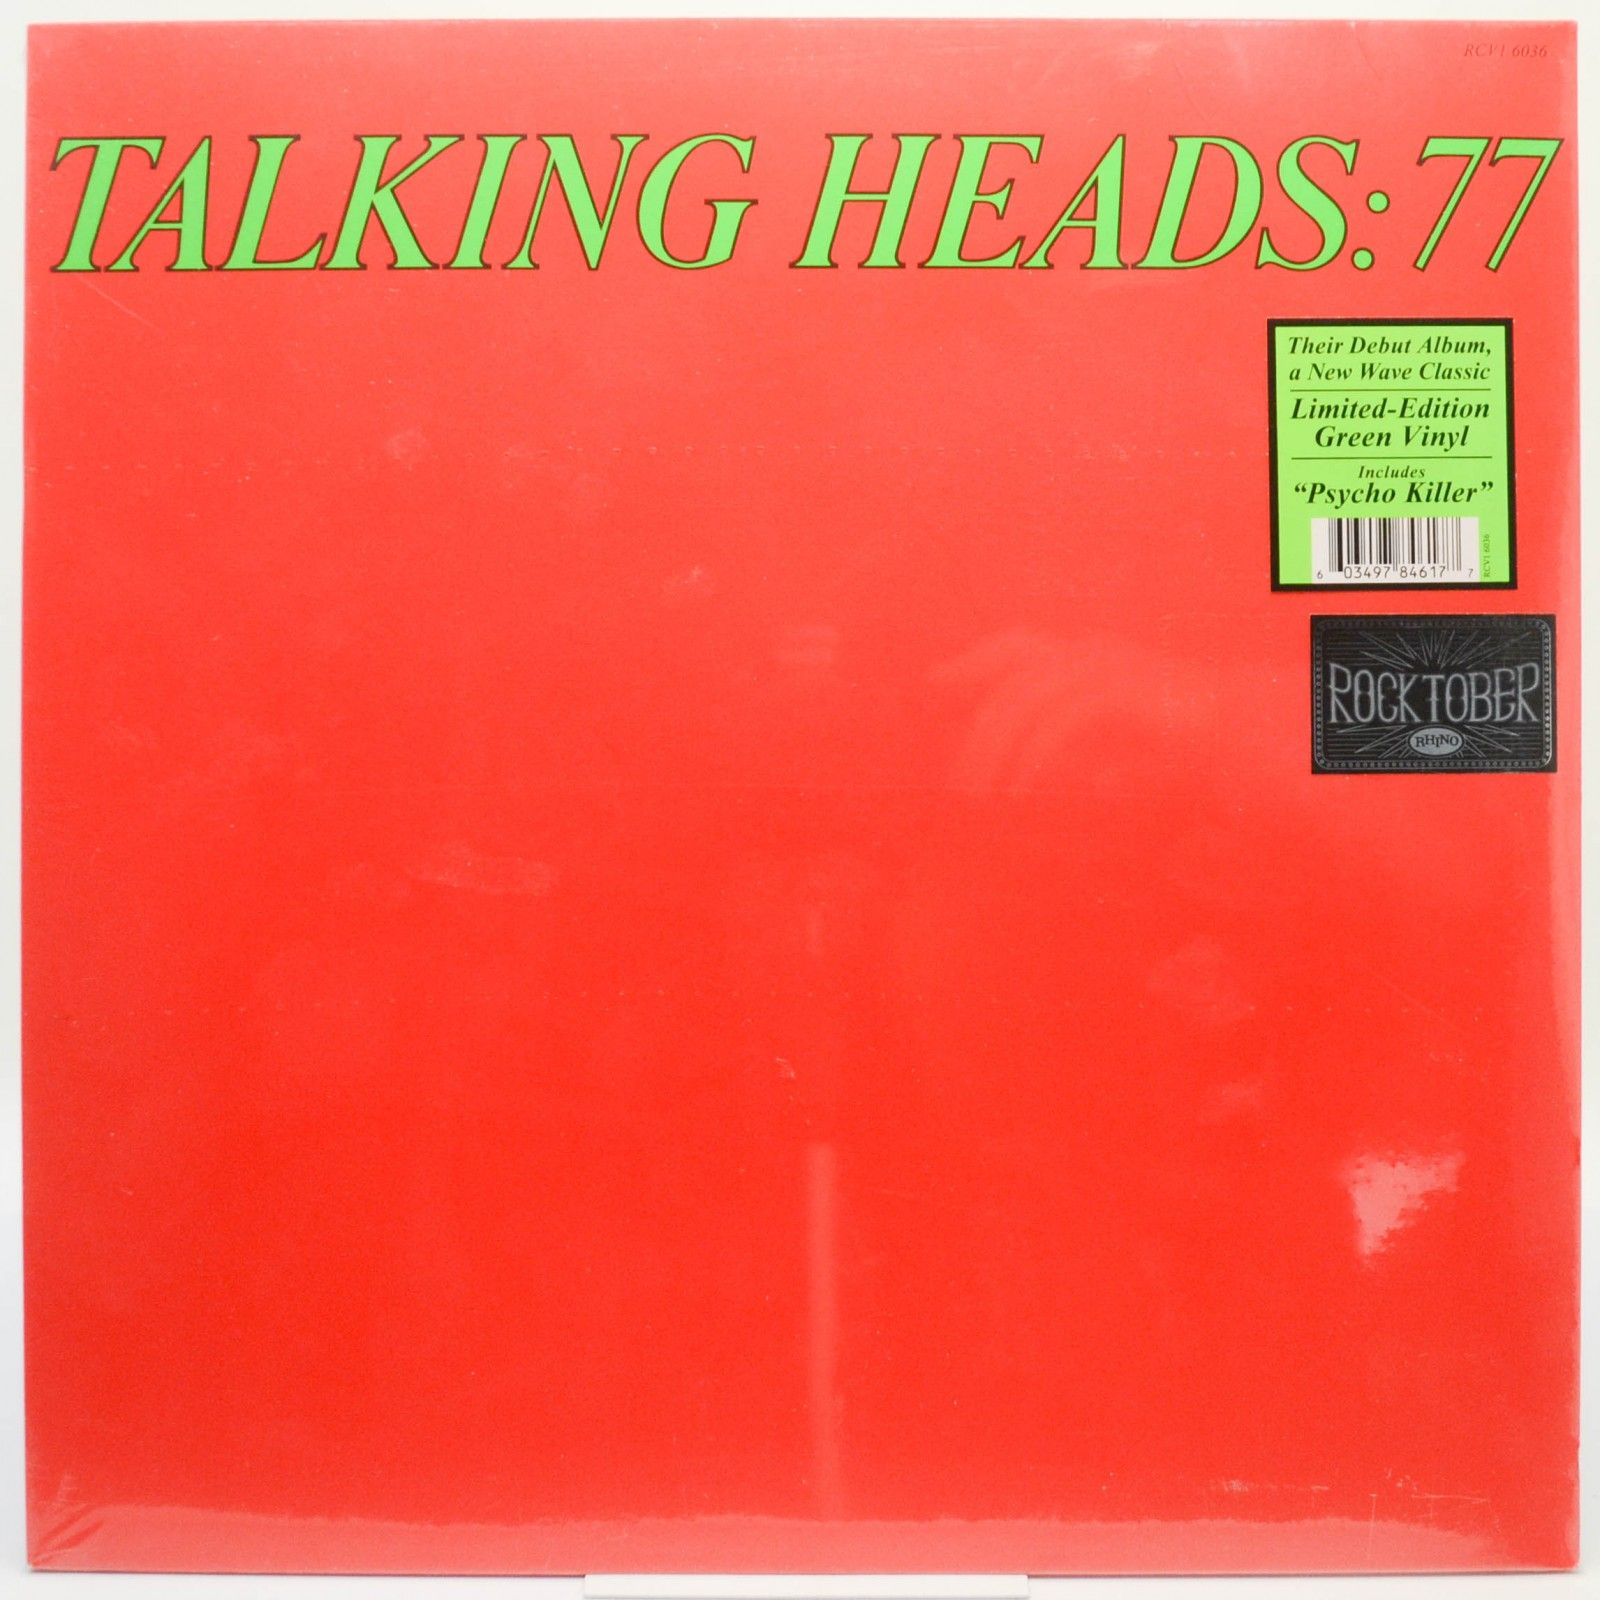 Talking Heads — Talking Heads: 77, 1977